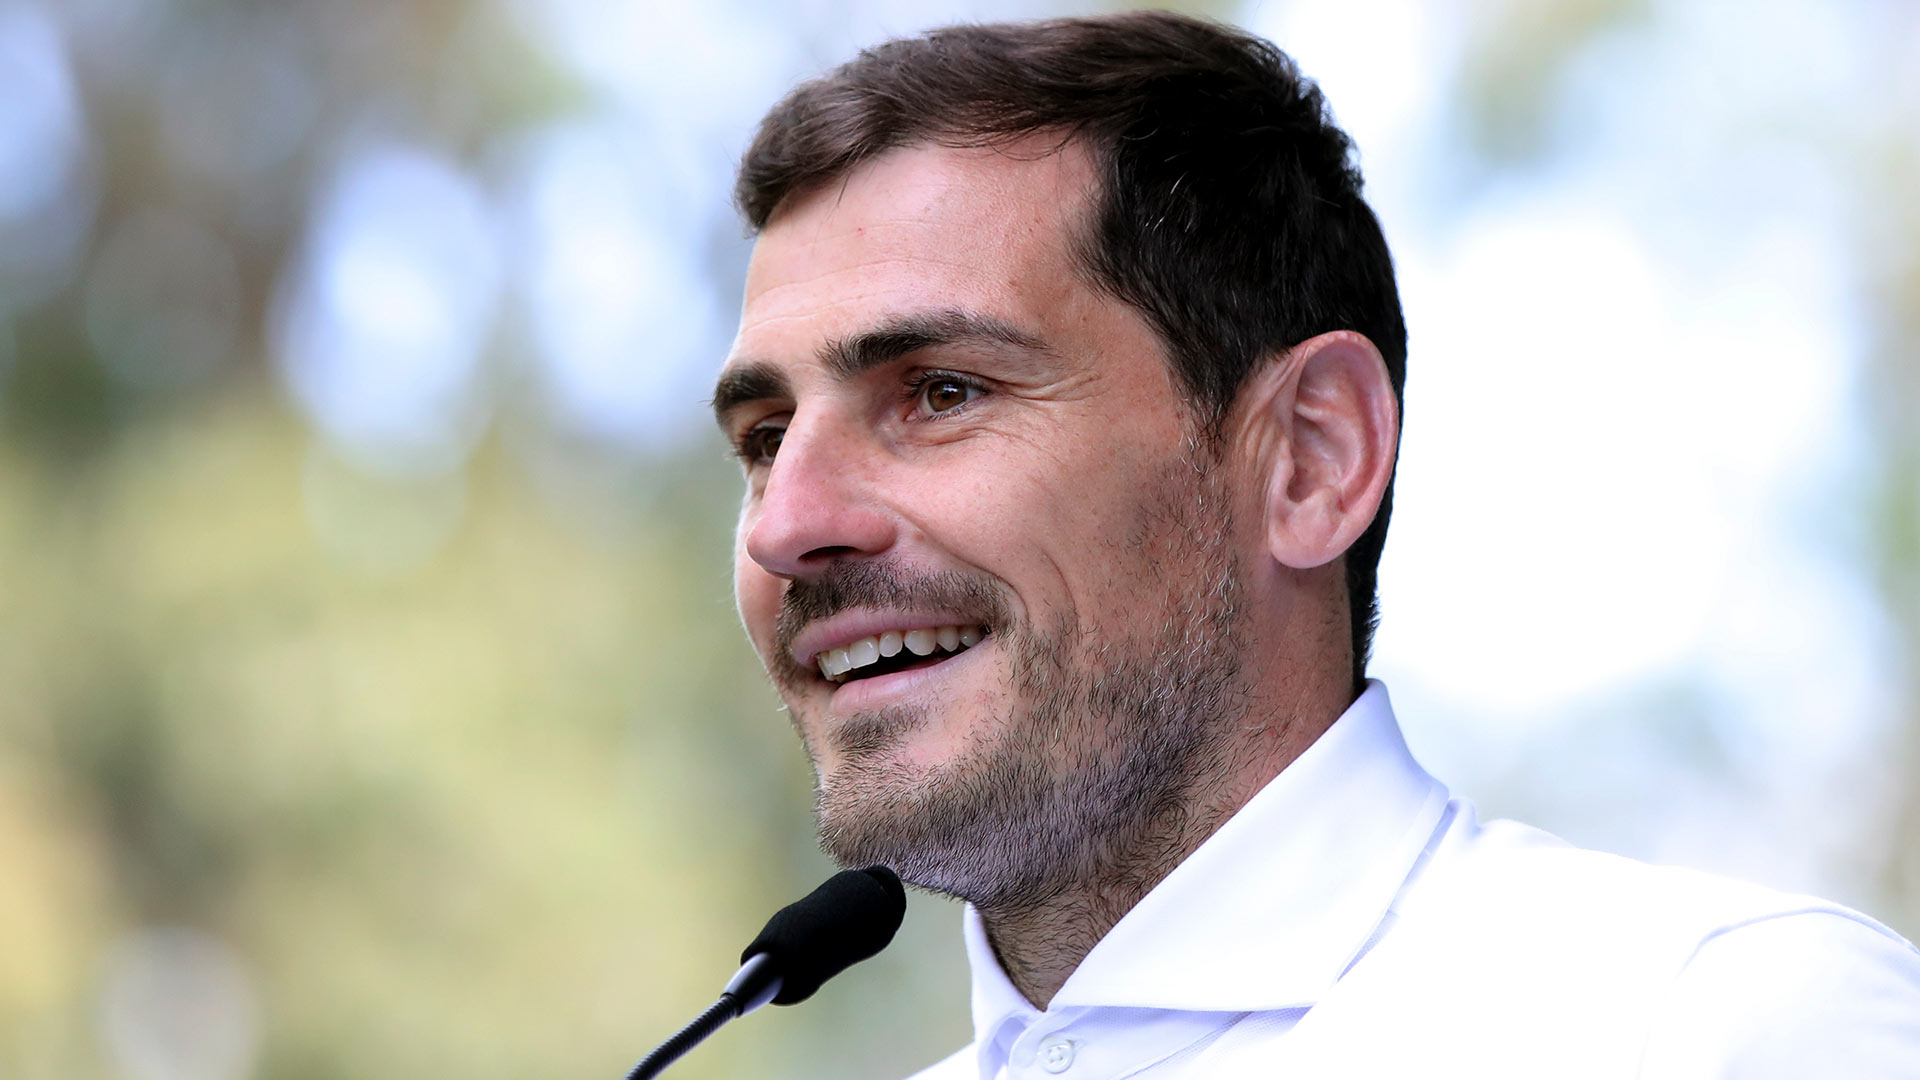 Registran la vivienda de Casillas en una operación contra el fraude fiscal en el fútbol portugués